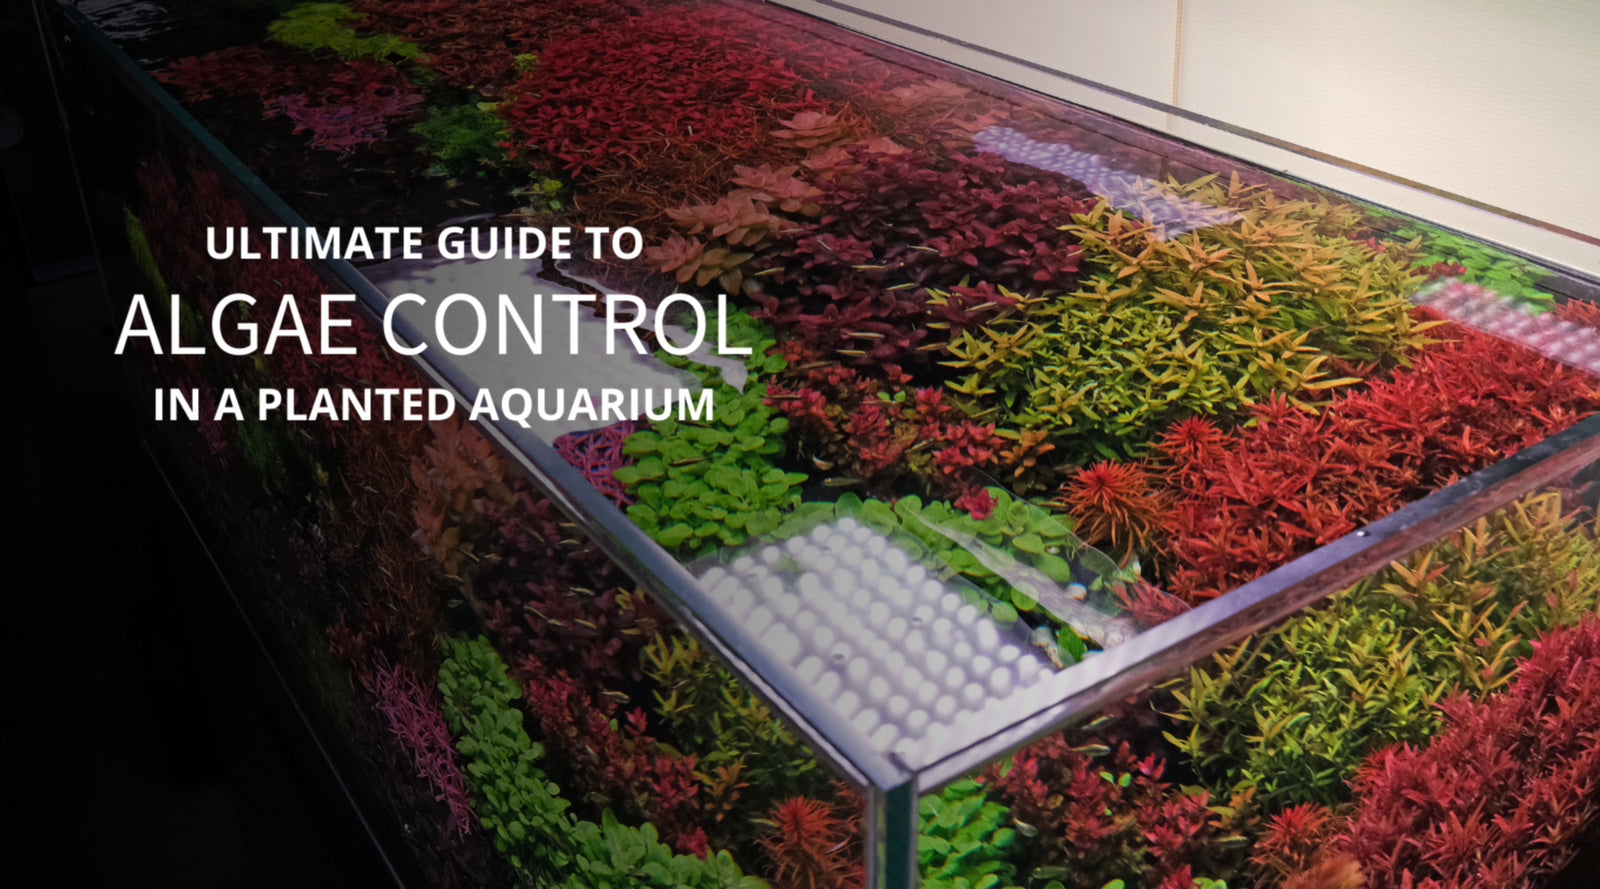 Algae Control 101: How to prevent algae in an aquarium?